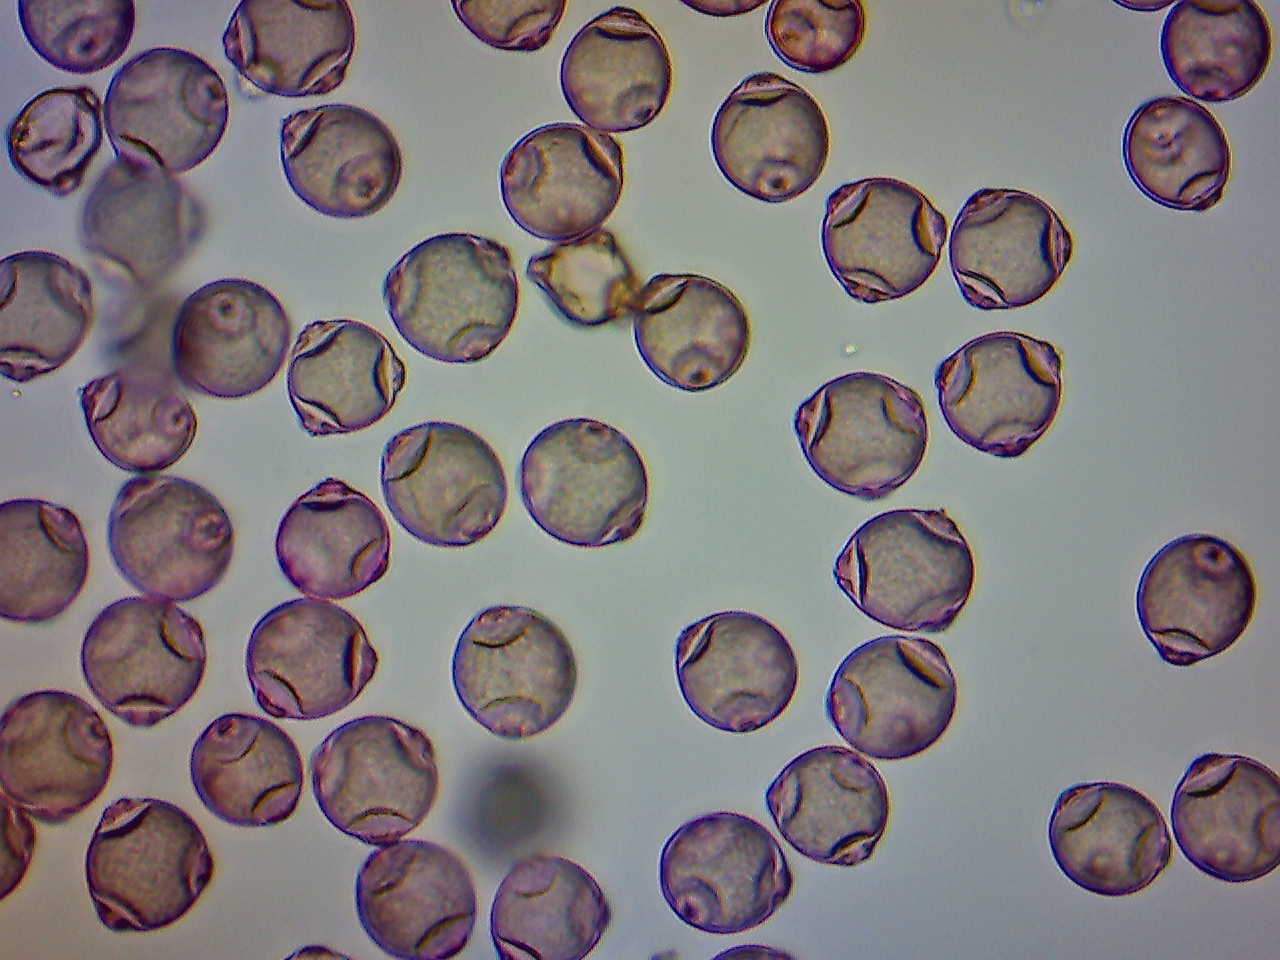 Birch Pollen Under the Microscope